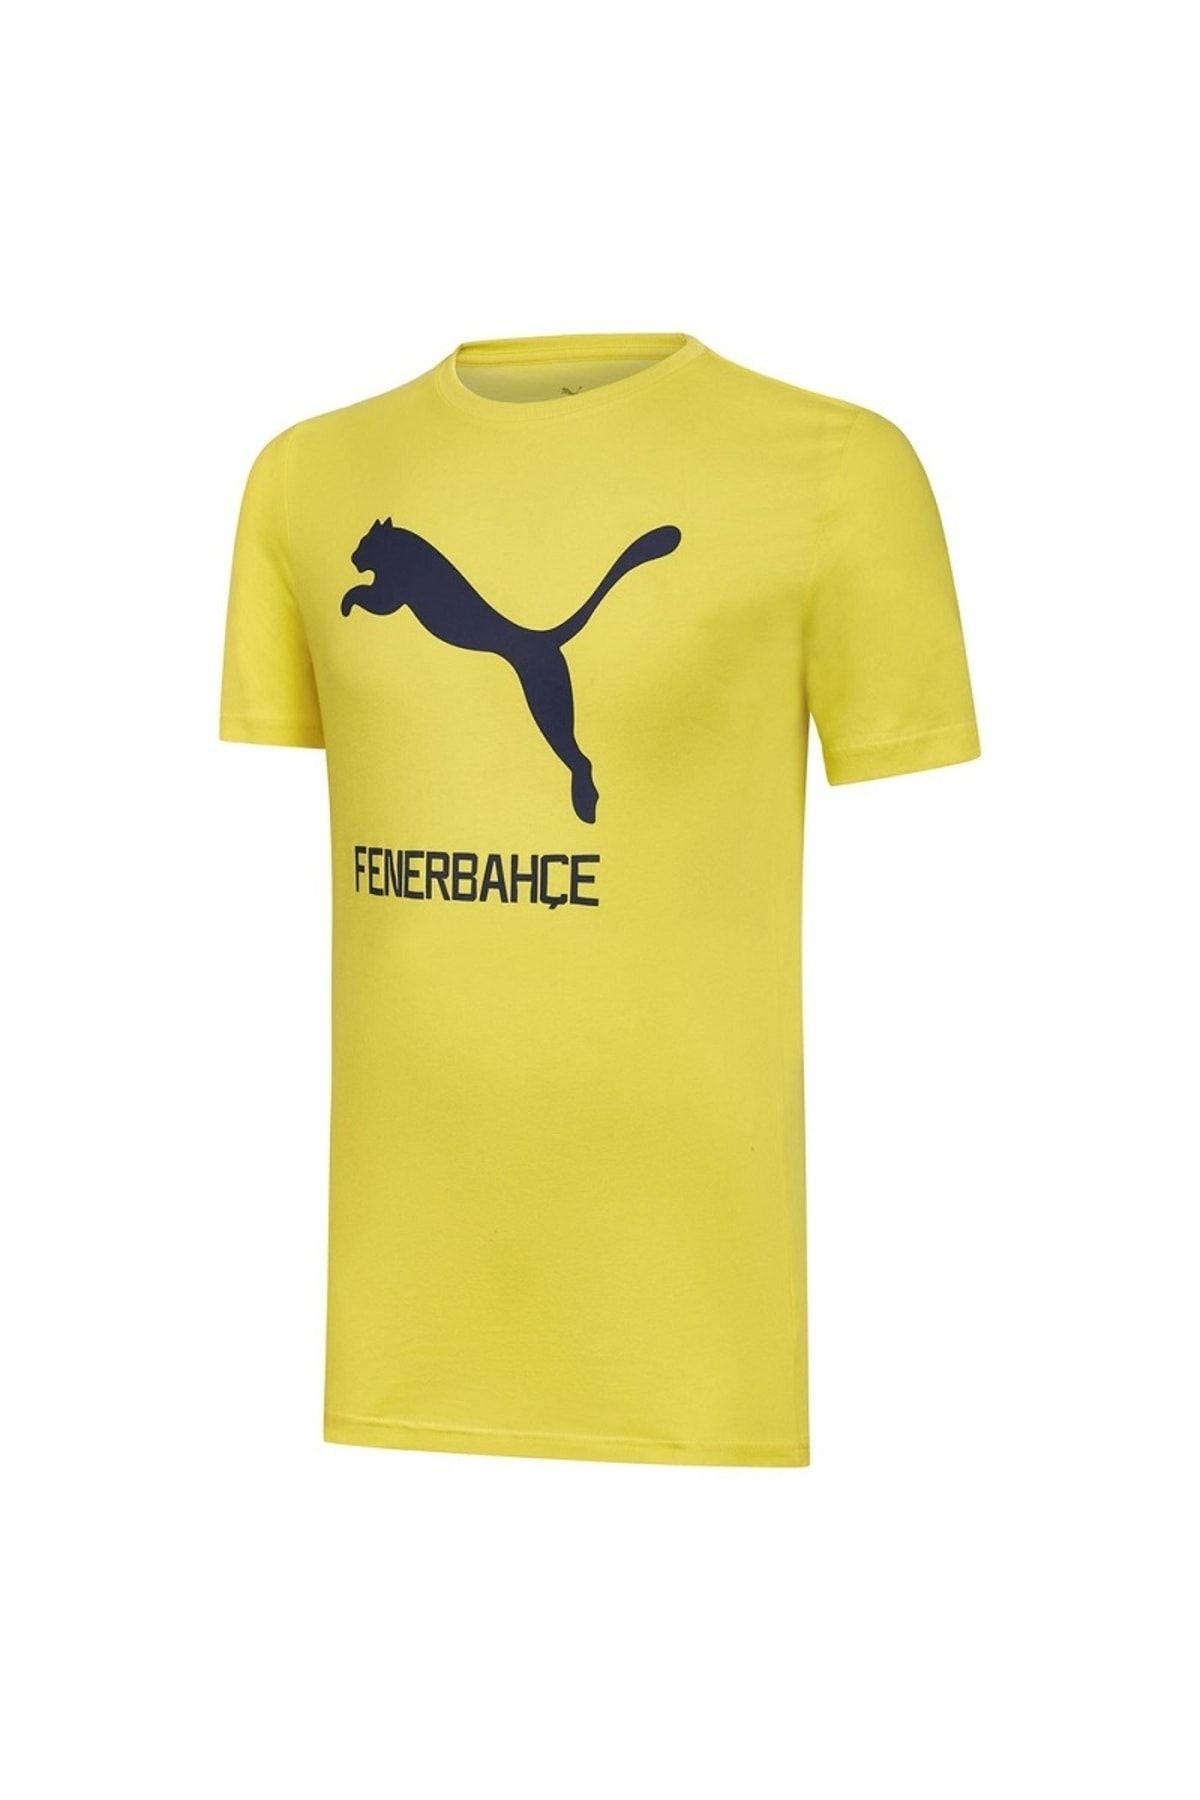 Fenerbahçe Puma Fenerbahçe Cat Tee Forma Sarı Tshirt 77313601